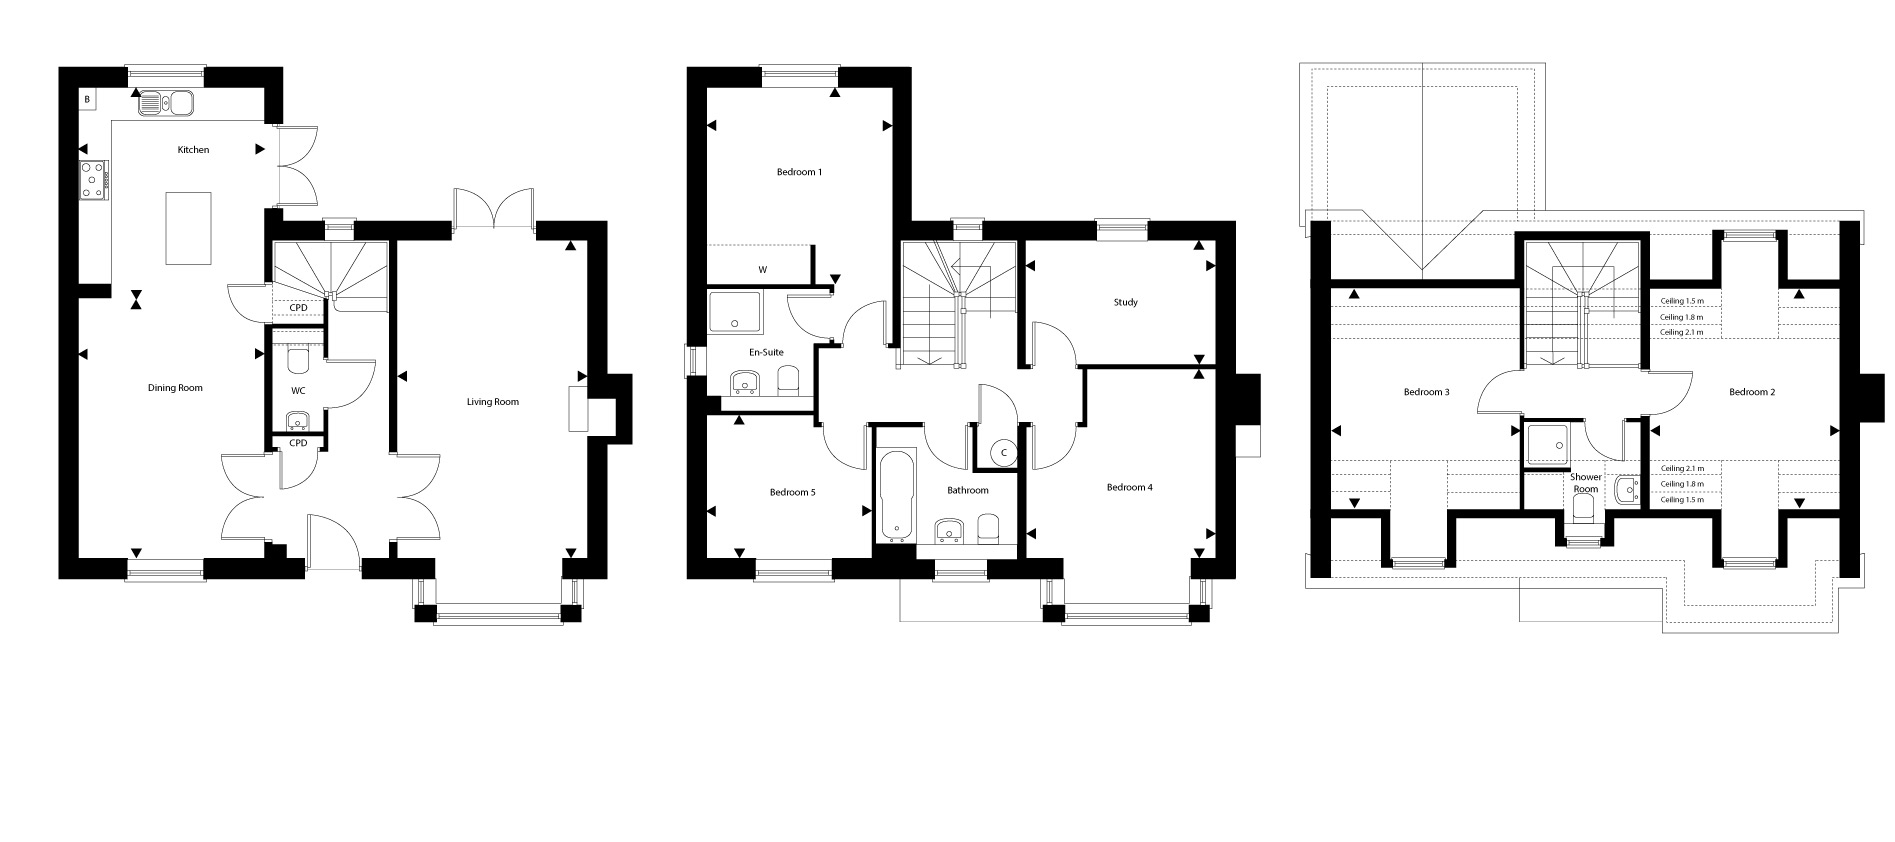 Plot 30 – The Pemberley Floor plan